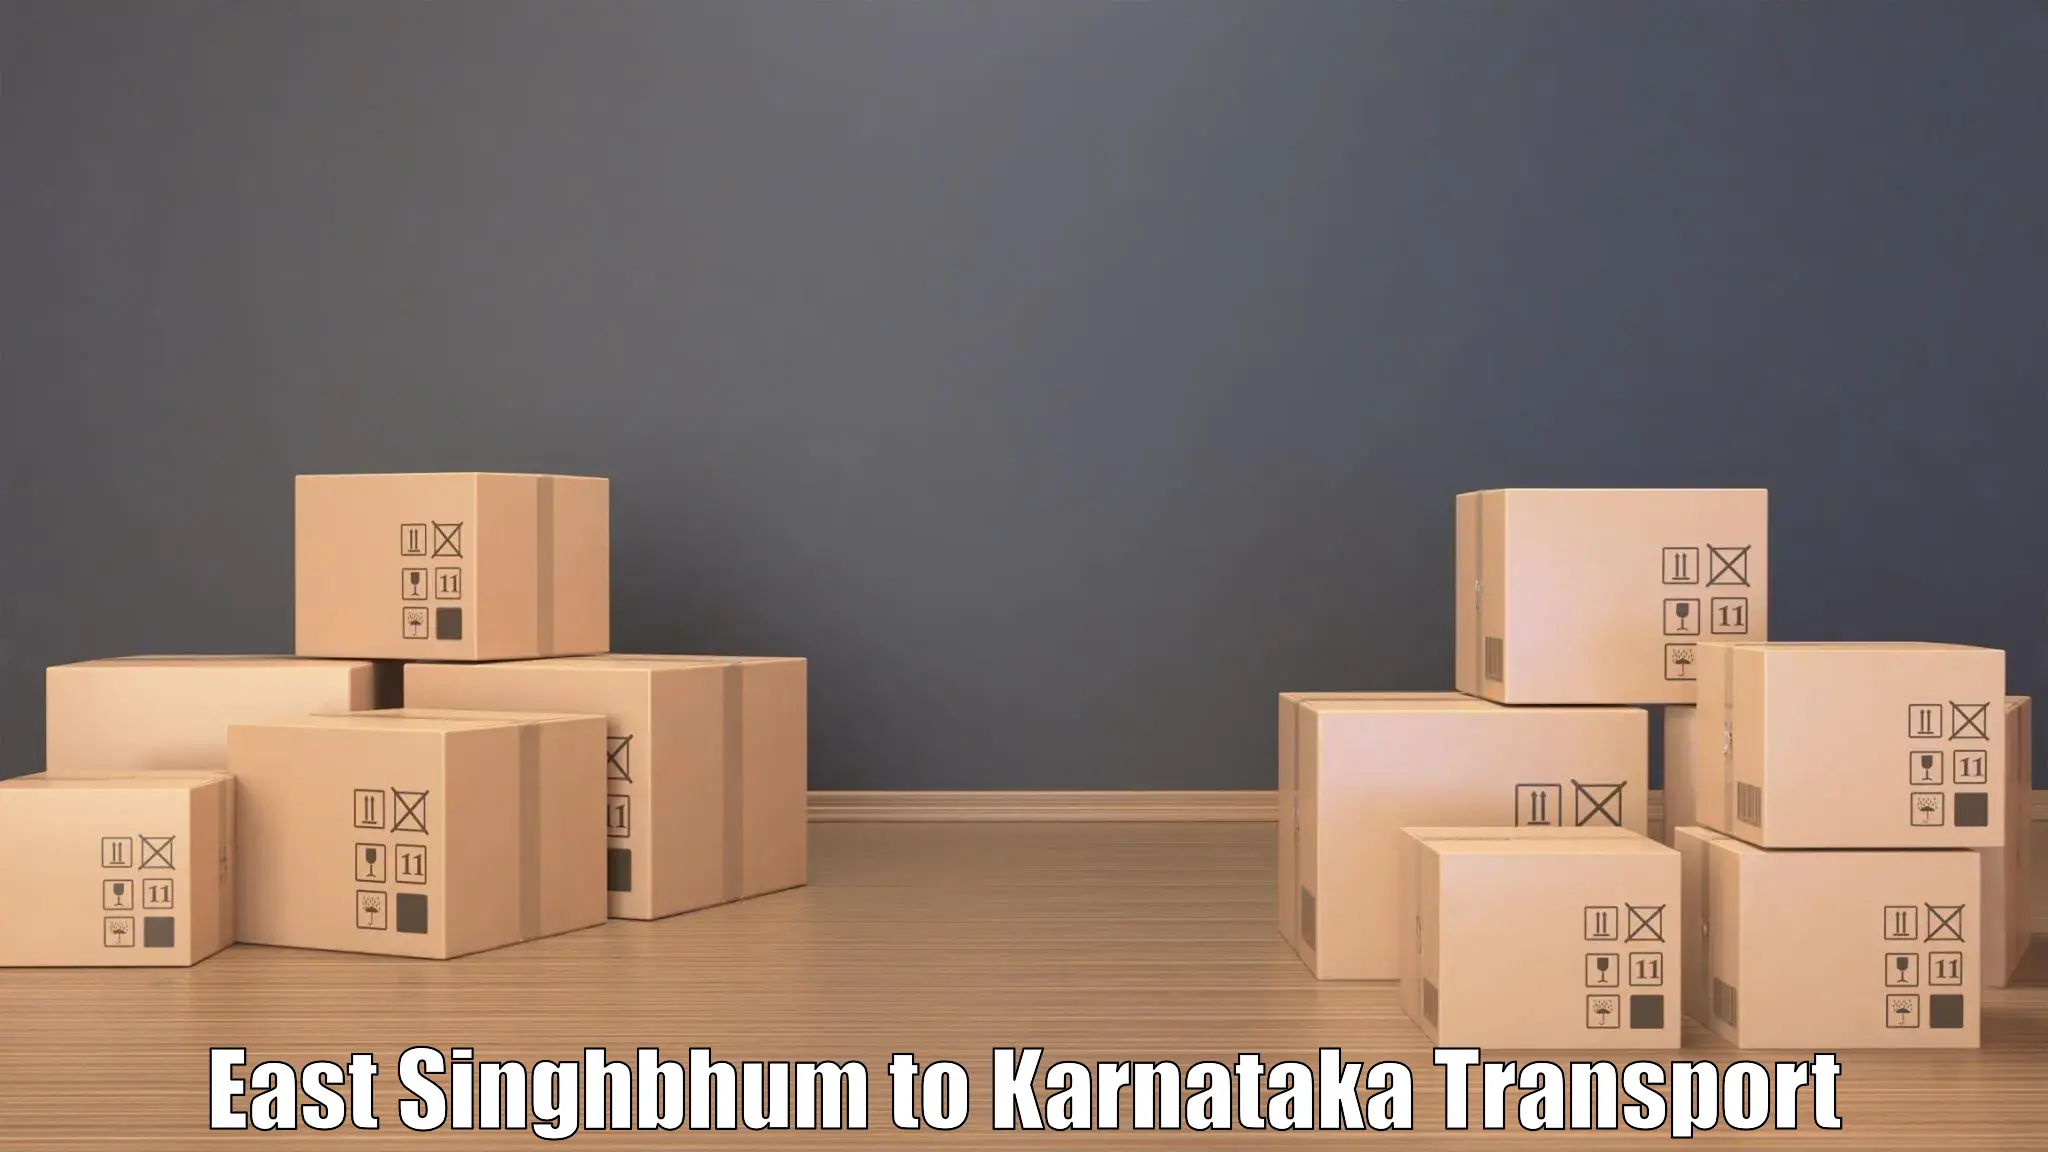 Vehicle transport services East Singhbhum to Karnataka